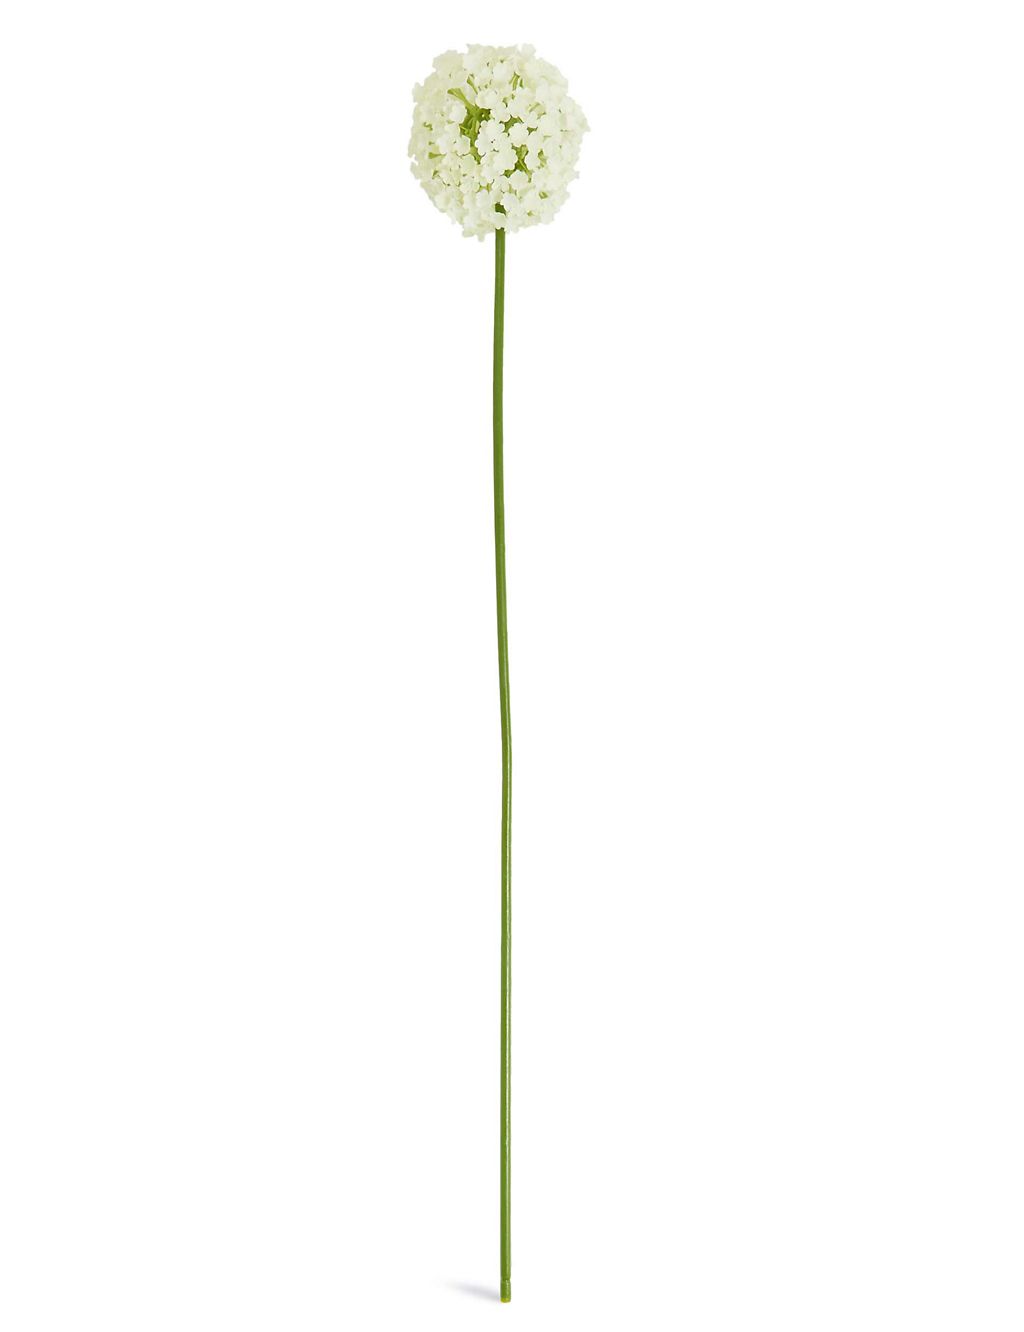 Allium Stem 3 of 4